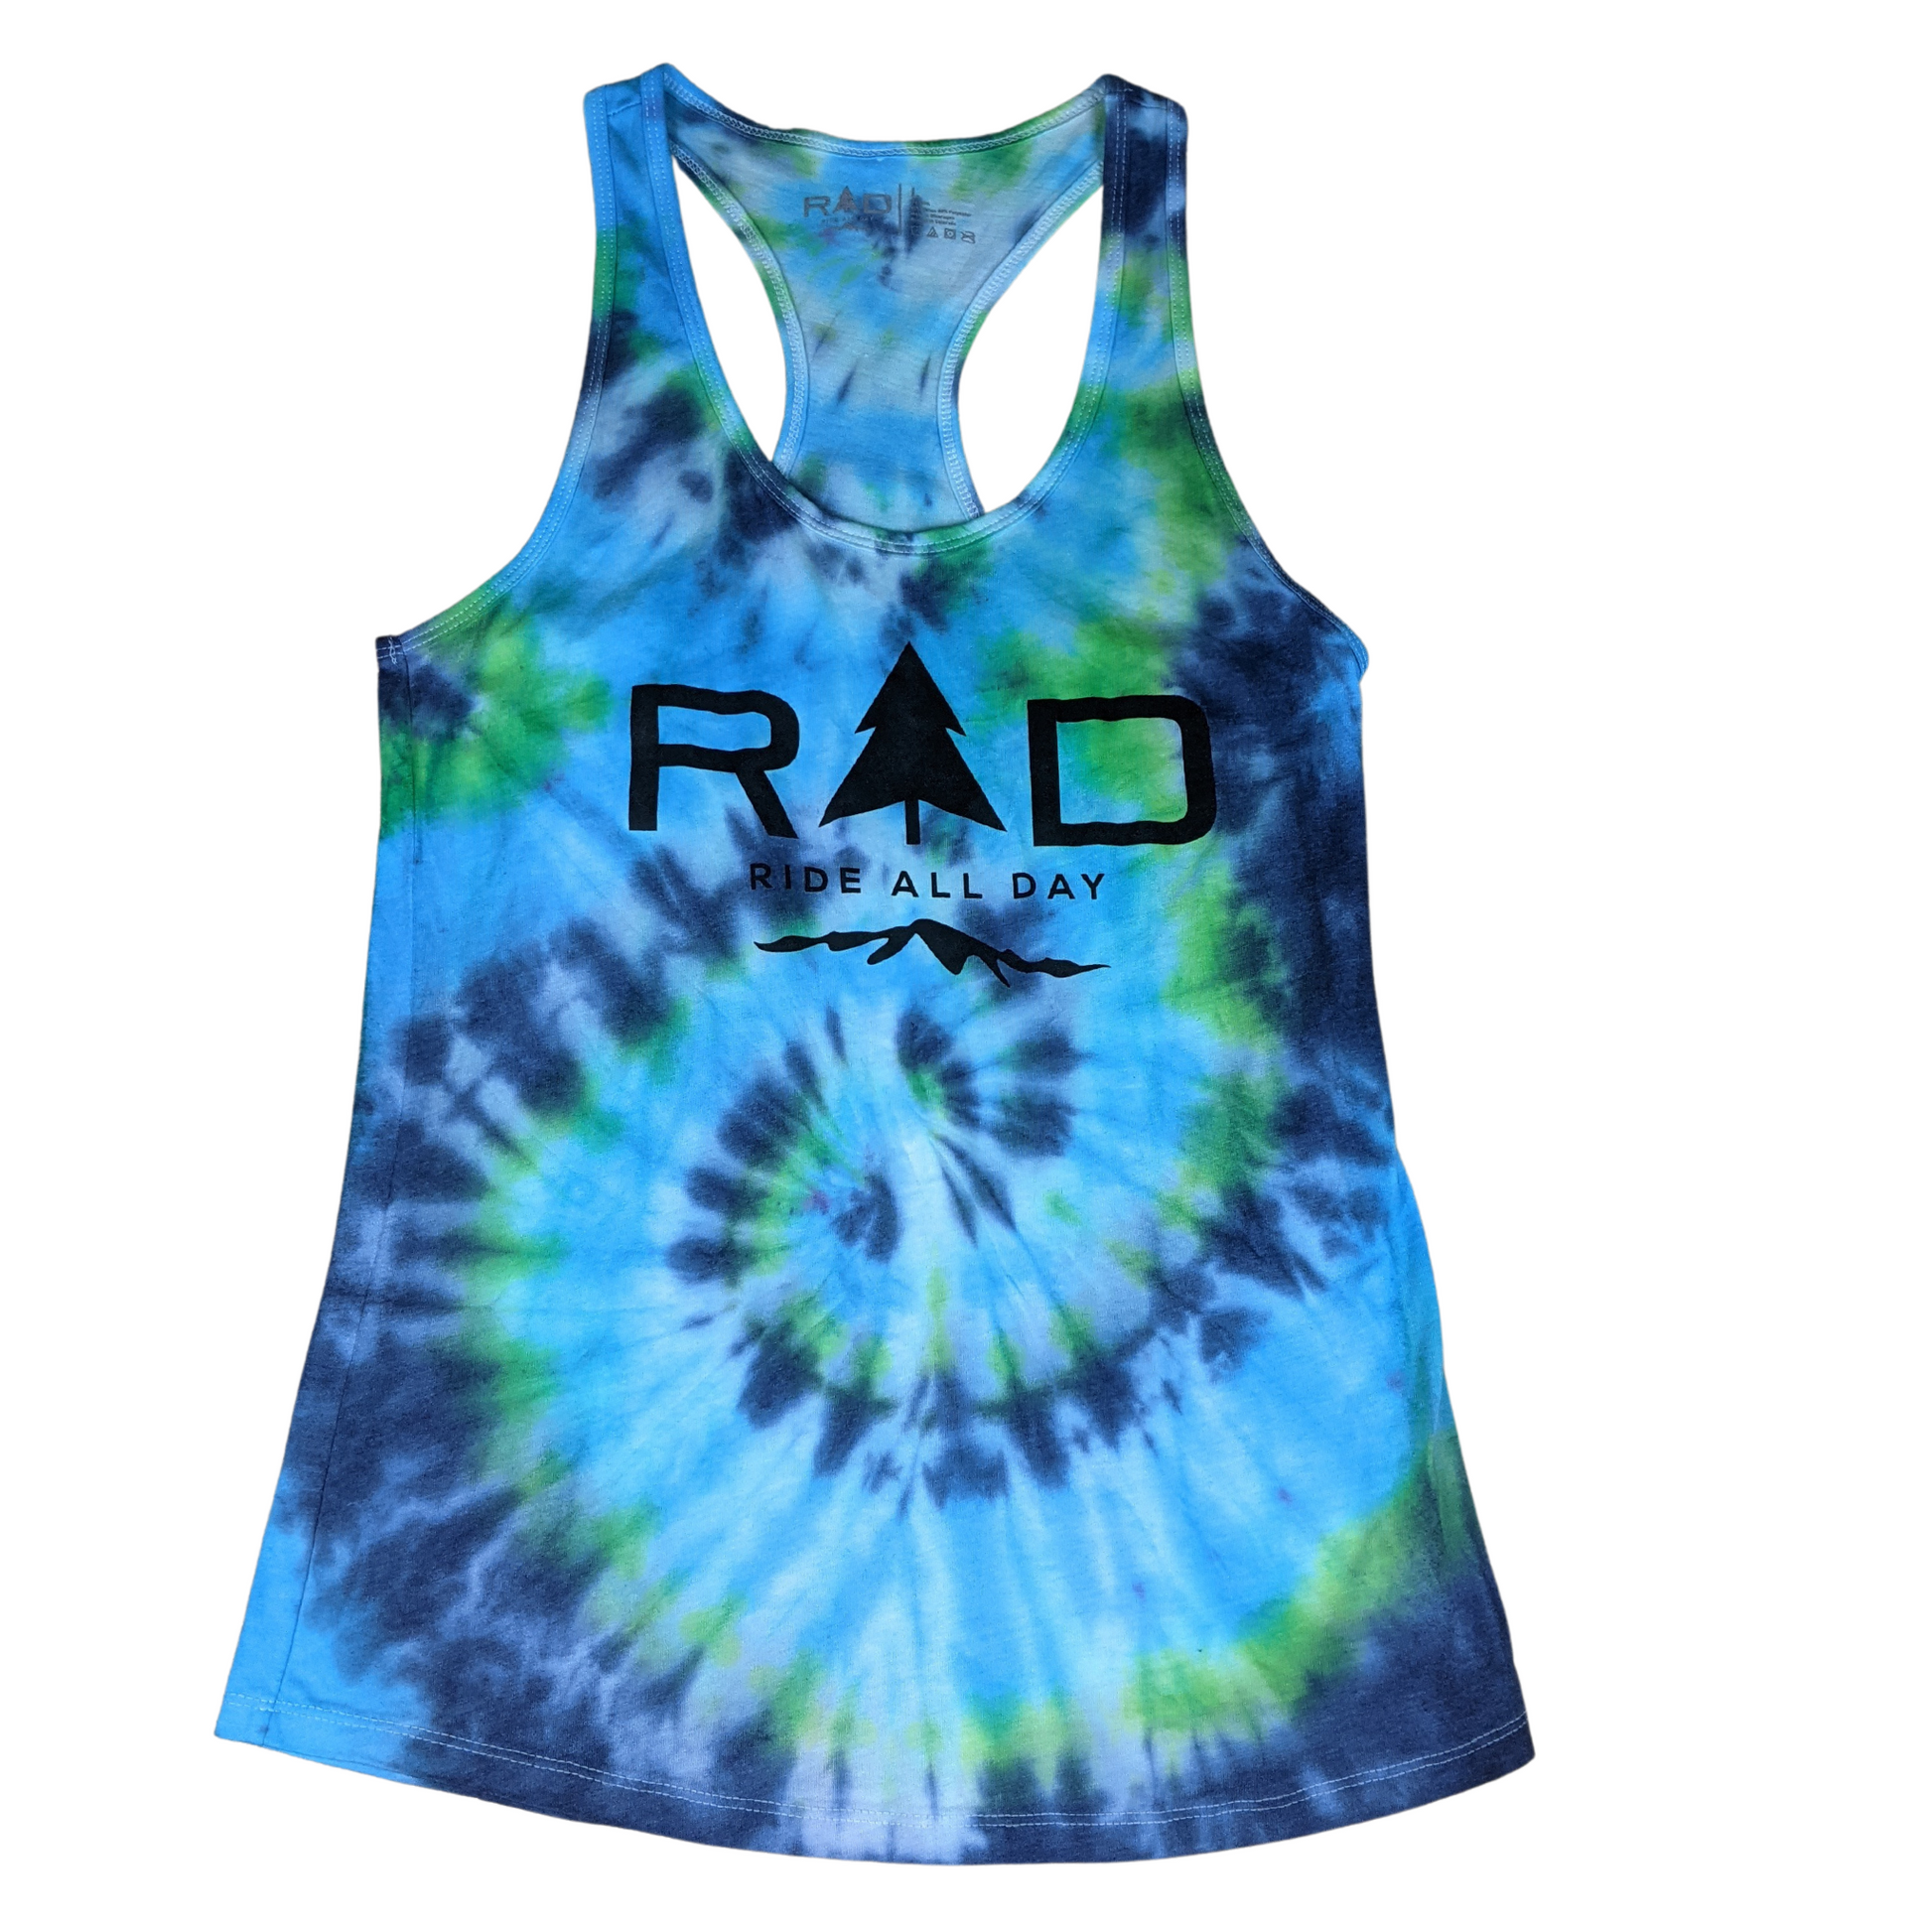 RAD Ladies racerback tank top in spiral tie dye pattern